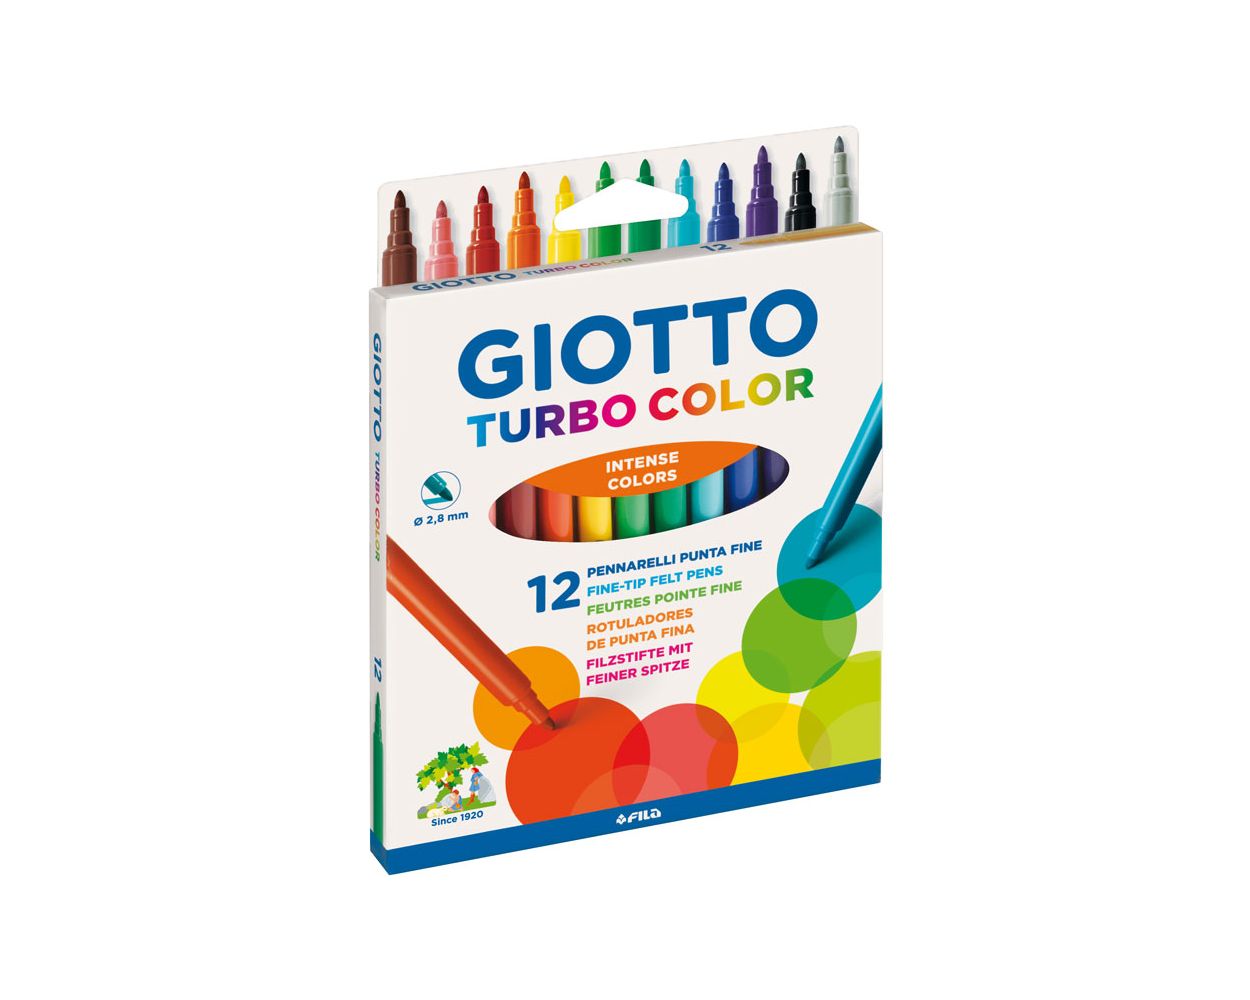 Giotto Turbo Maxi Intense Colour